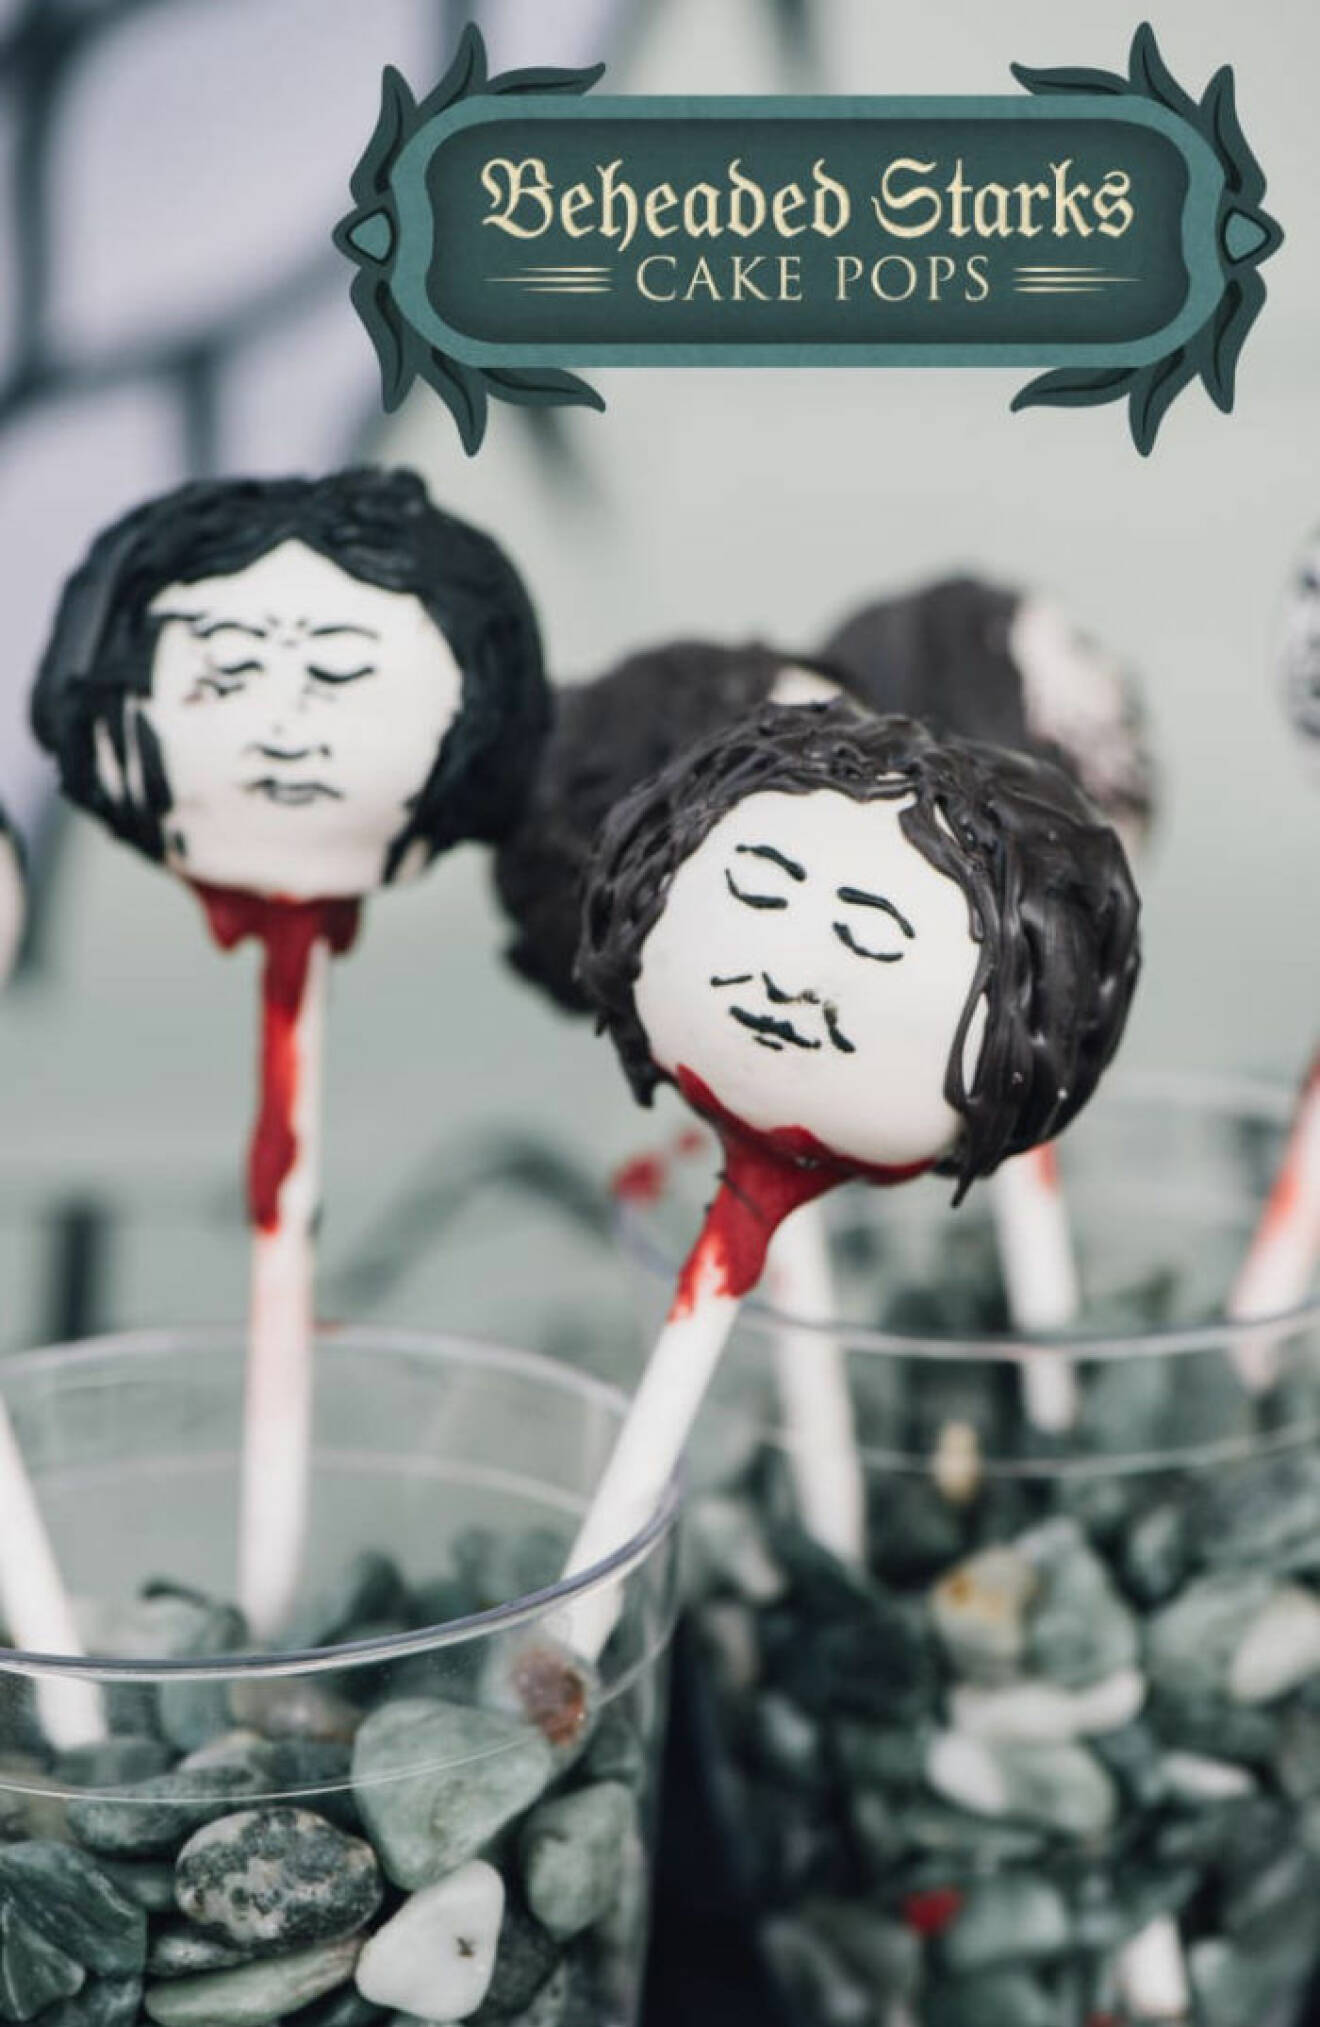 Beheaded Starks cake pops.